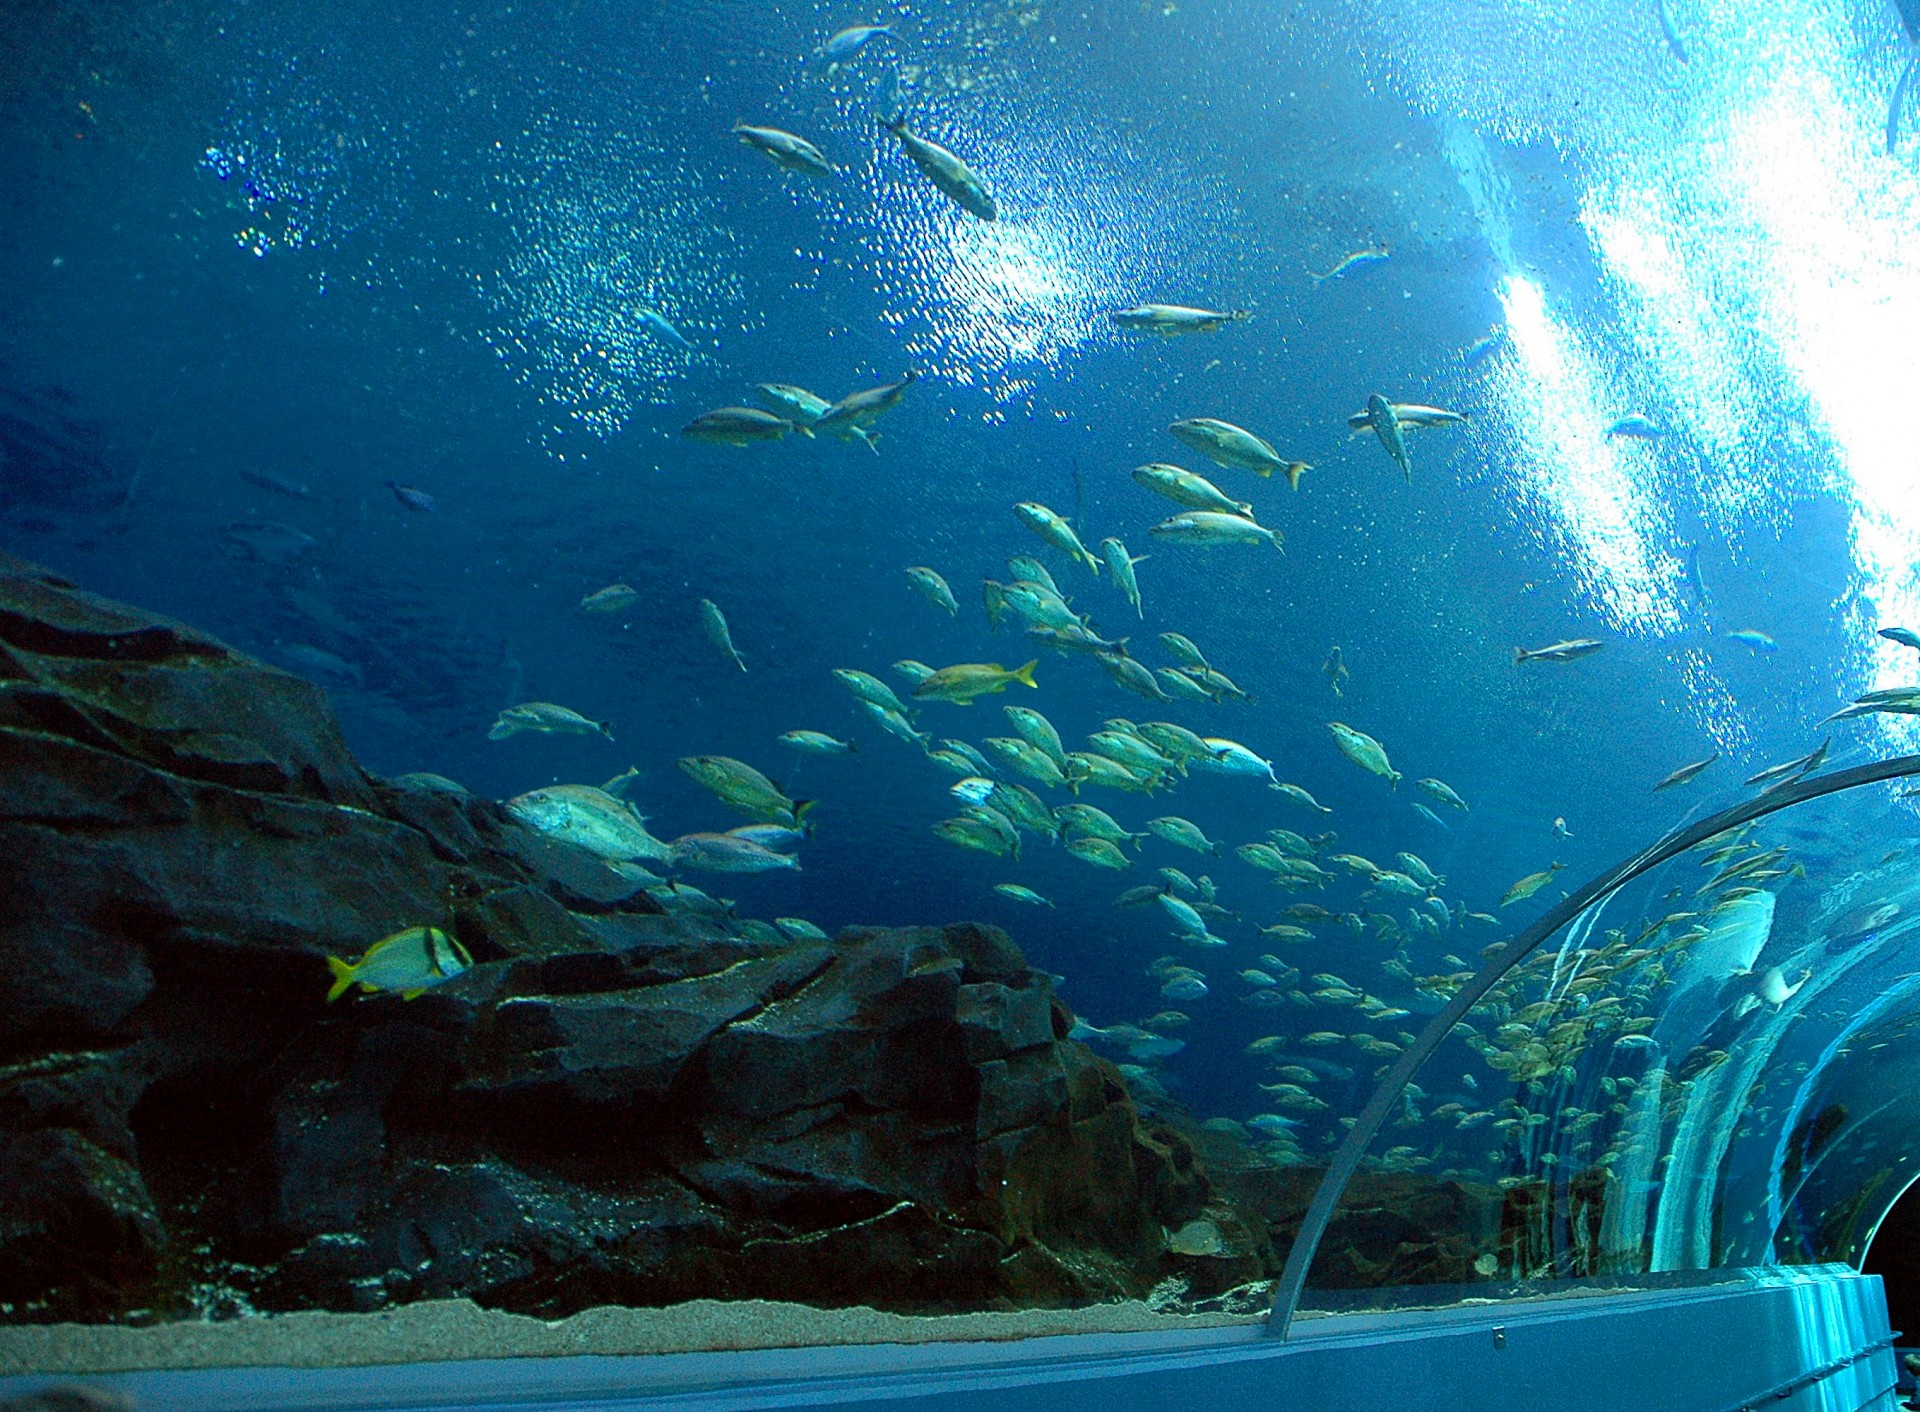 aquarium species indoors free photo